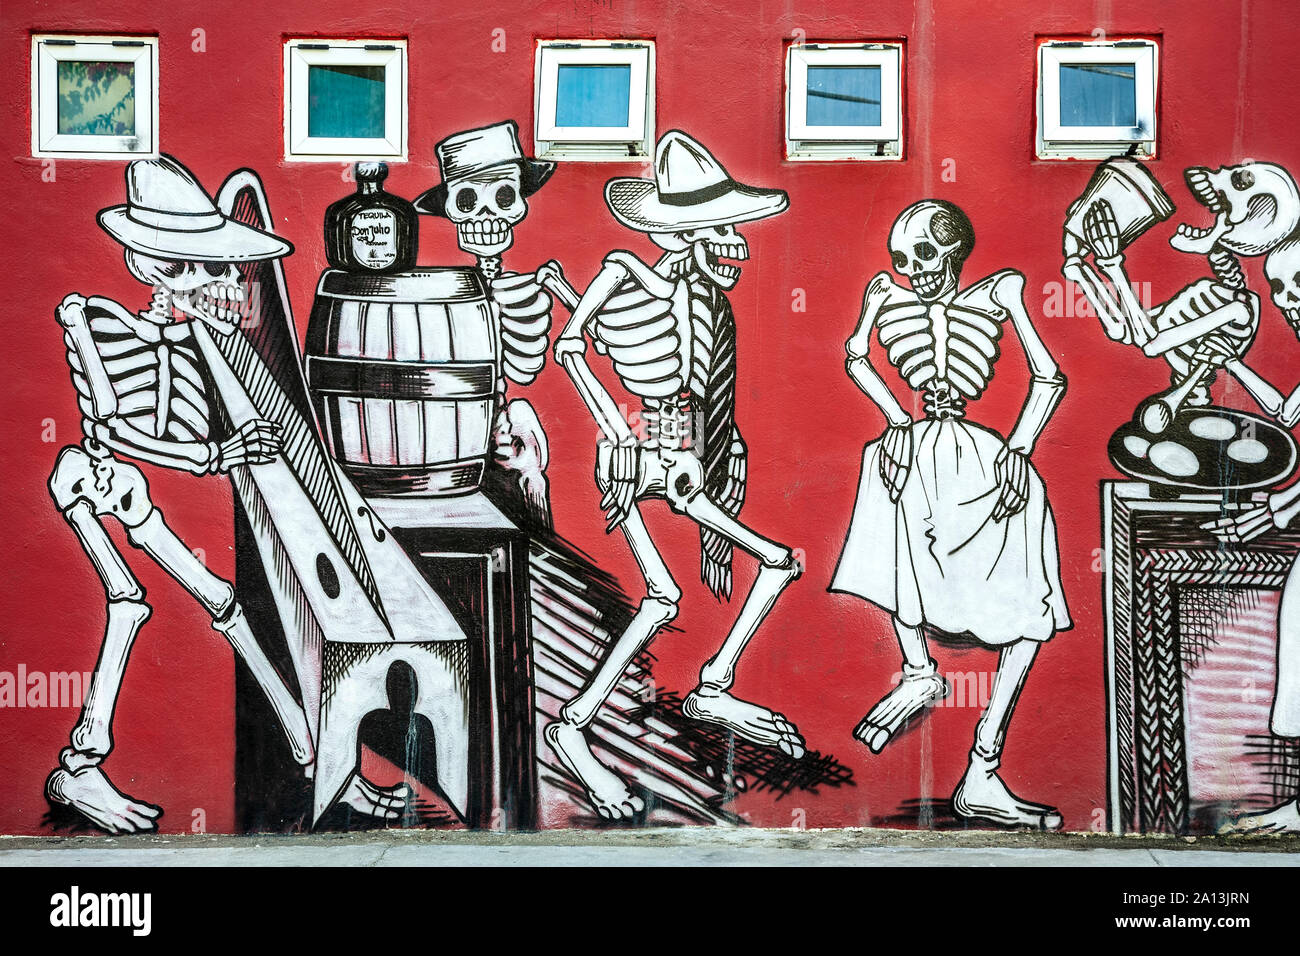 Mural of Dia de los Muertos characters, San Jose del Cabo, Baja California Sur, Mexico Stock Photo